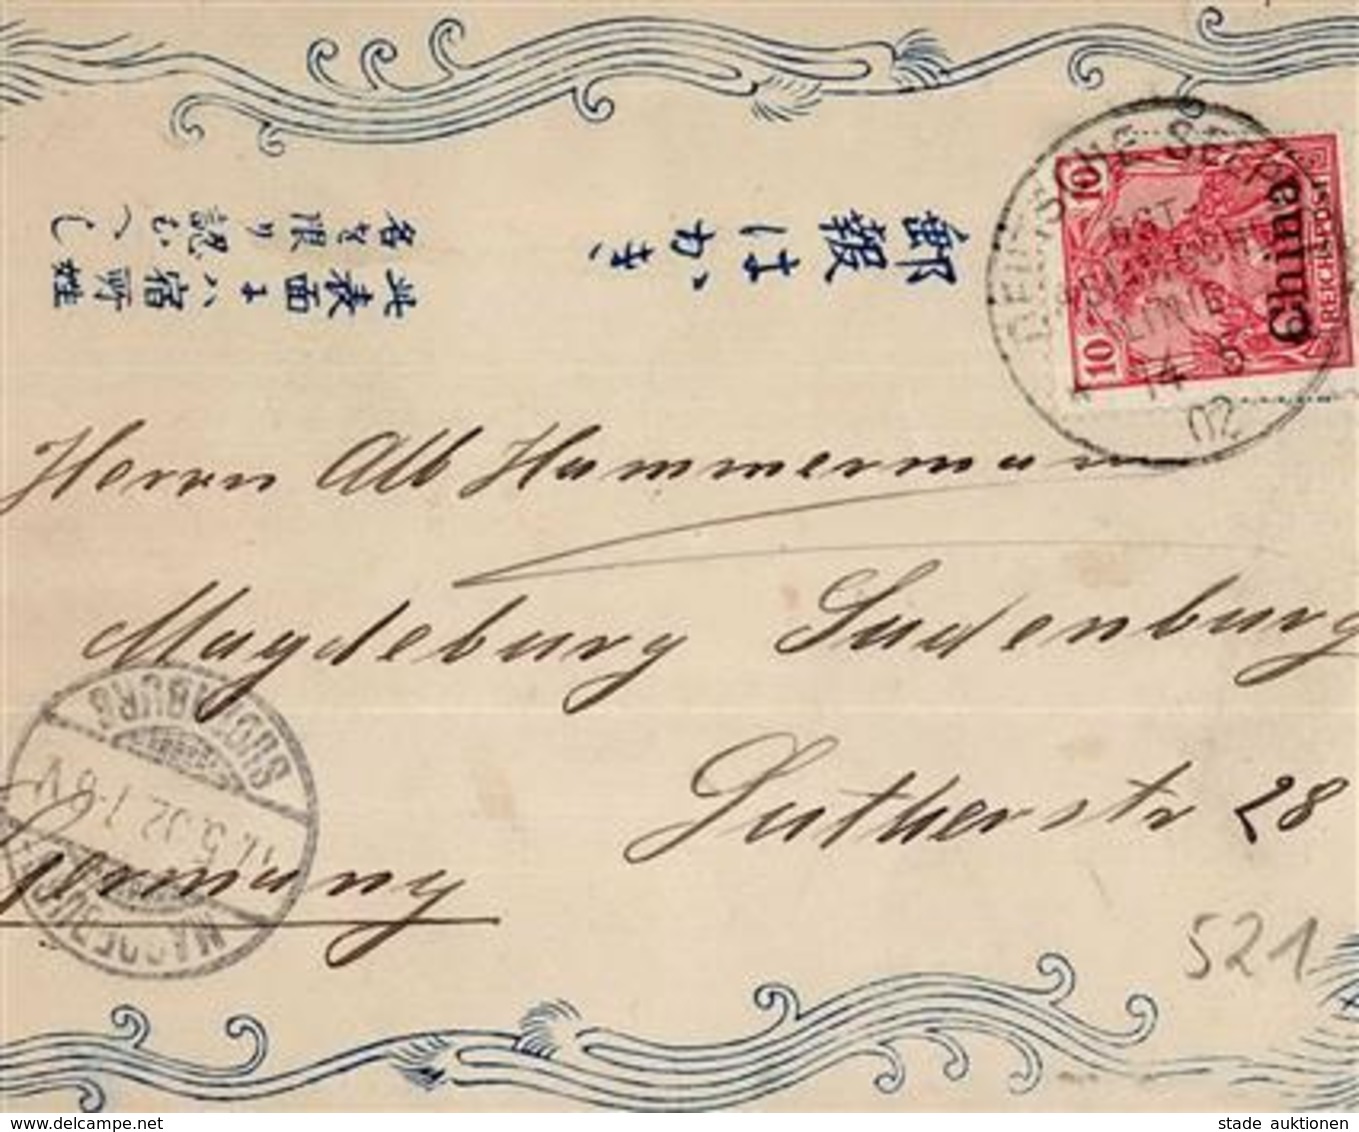 Kolonien Kiautschou Handgemalt Aus Nagasaki Stpl. Deutsche Seepost Ostasiatische Linie 14.5.02 I-II Peint à La Main Colo - History